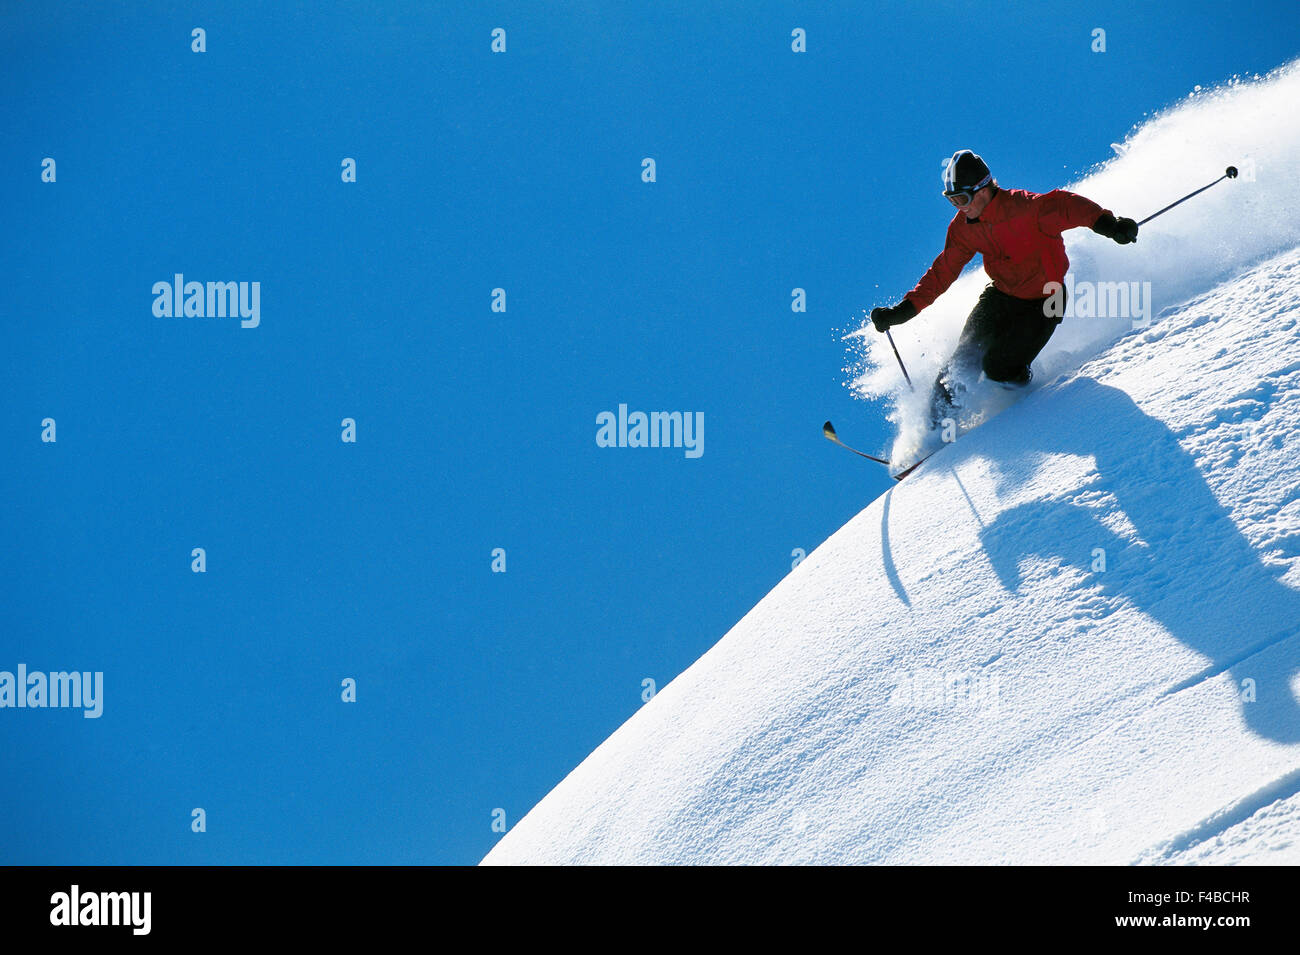 30-34 Jahre Abenteuer Aktivität Erwachsene nur blauen Himmel Farbe Bild Mut downhill Ski horizontale Freizeit lifestyle Stockfoto